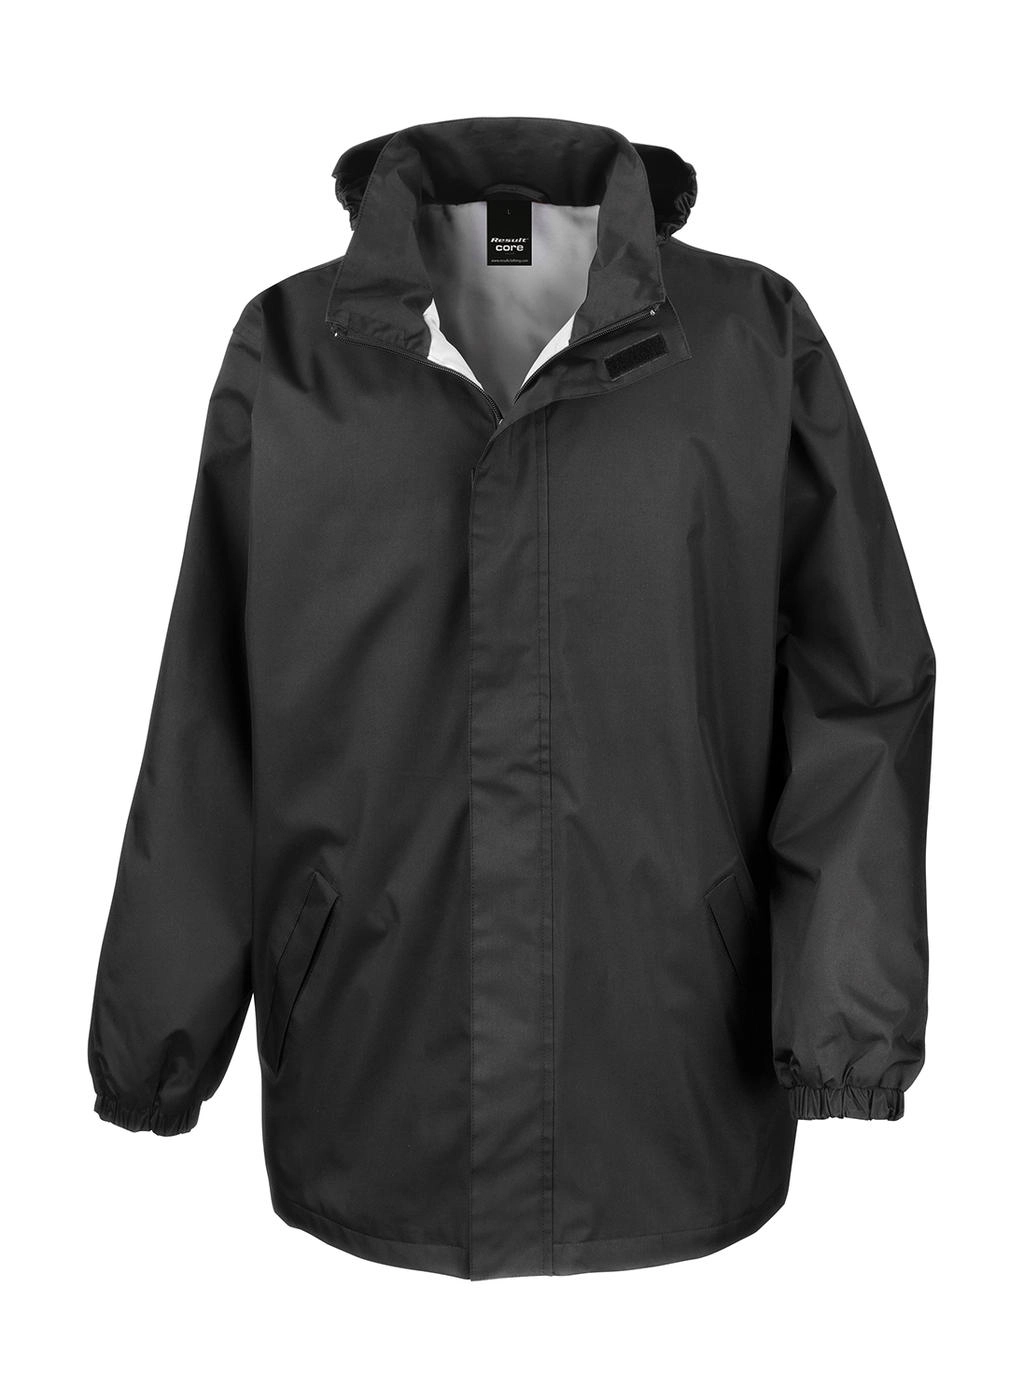 Core Midweight Jacket zum Besticken und Bedrucken in der Farbe Black mit Ihren Logo, Schriftzug oder Motiv.